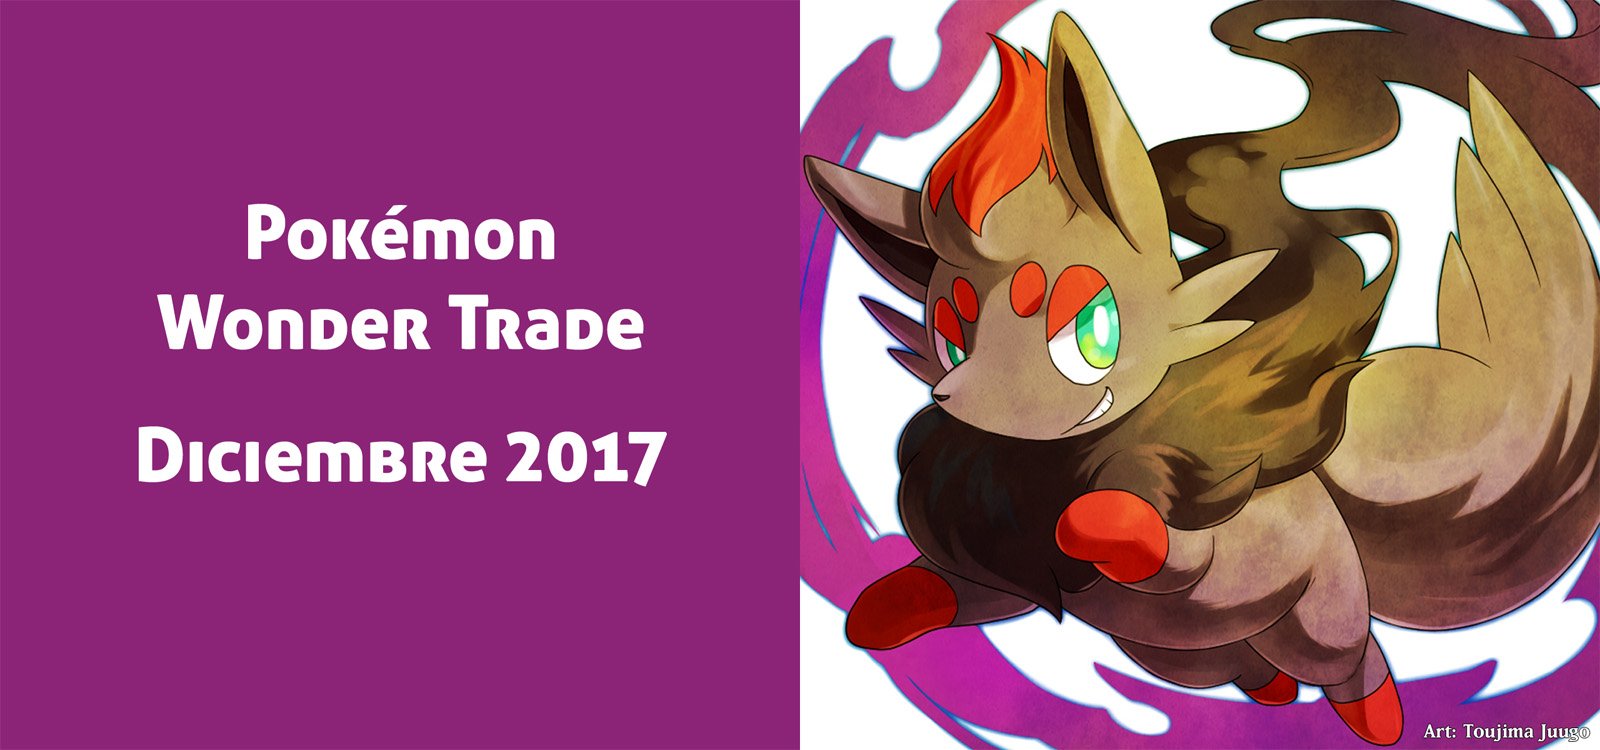 Pokémon Wonder Trade de Diciembre de 2017: Análisis de los intercambios durante el mes.